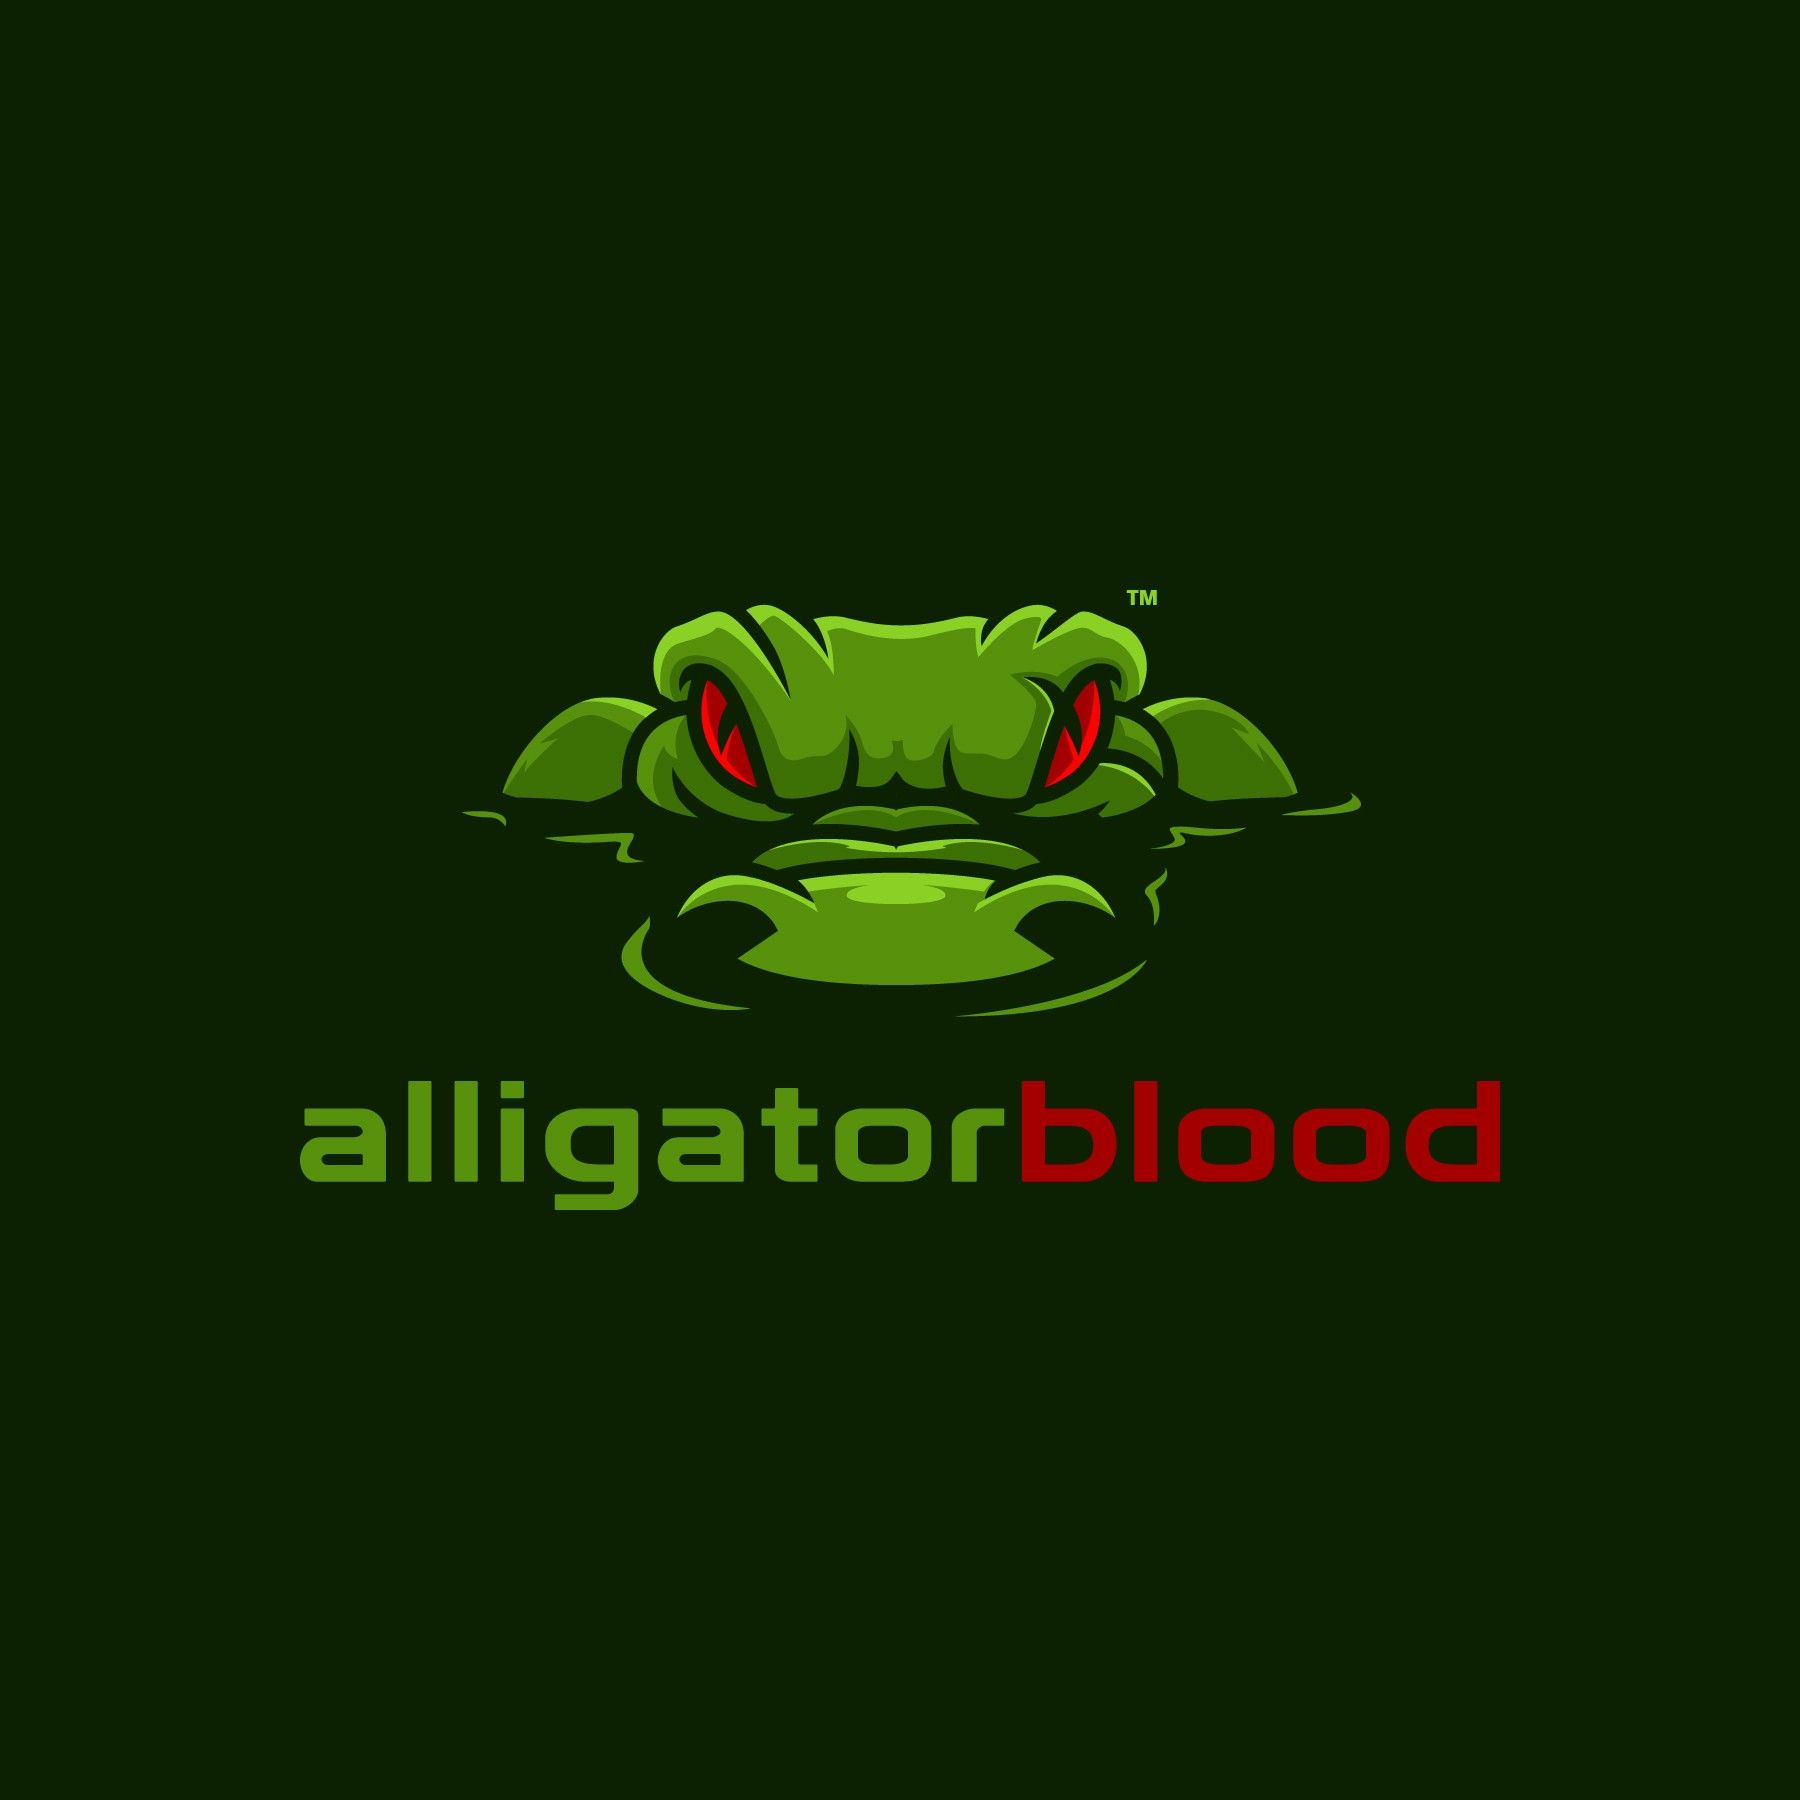 Alligator Sports Logo - Alligator Blood logo | Logos Inspiration | Logos, Logo design, Logo ...